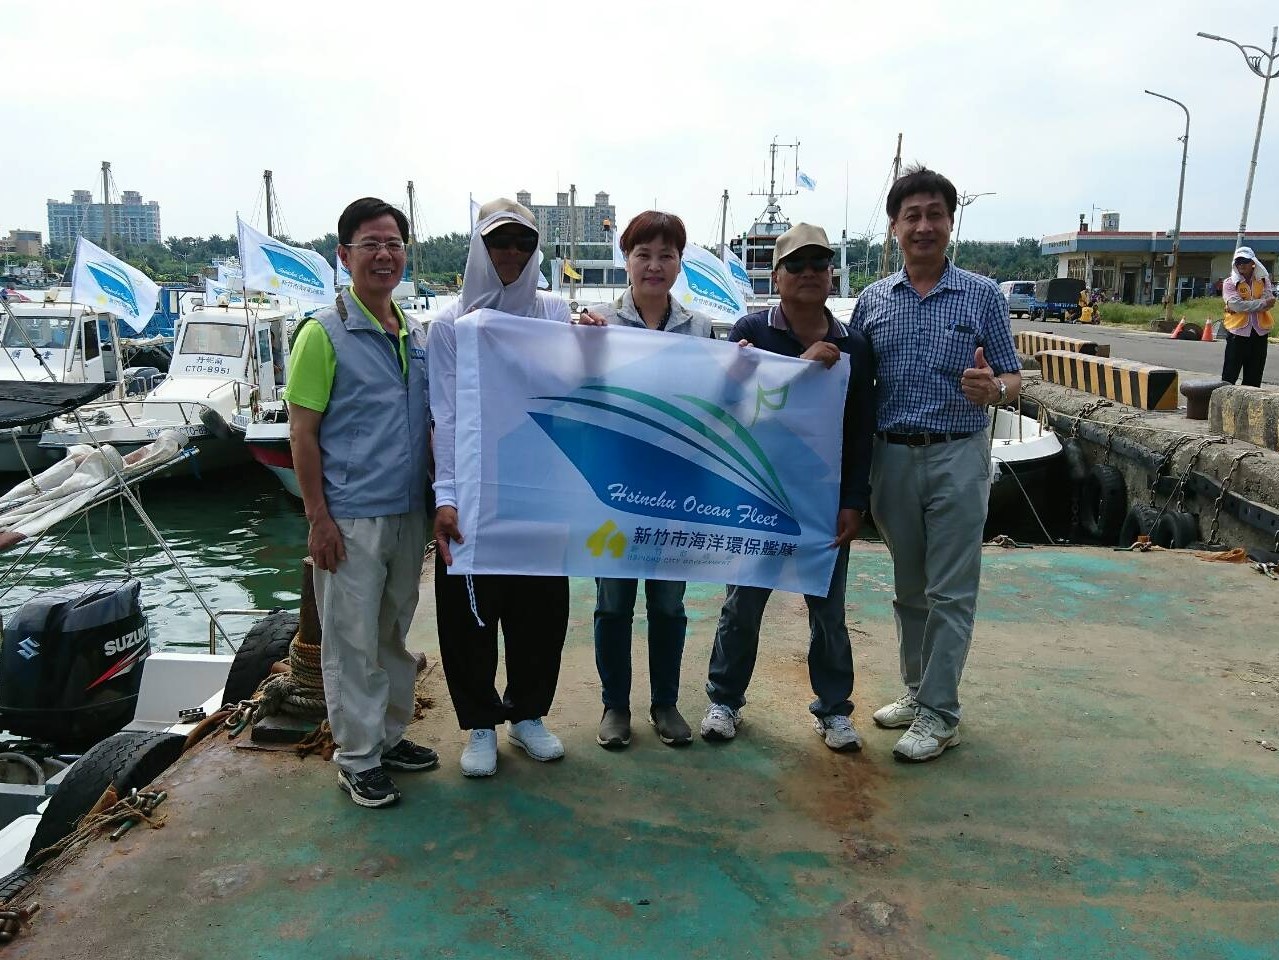 竹市號召百艘漁船組「環保艦隊」 年清3千公斤海洋廢棄物獲大獎肯定小圖共6張，pic4